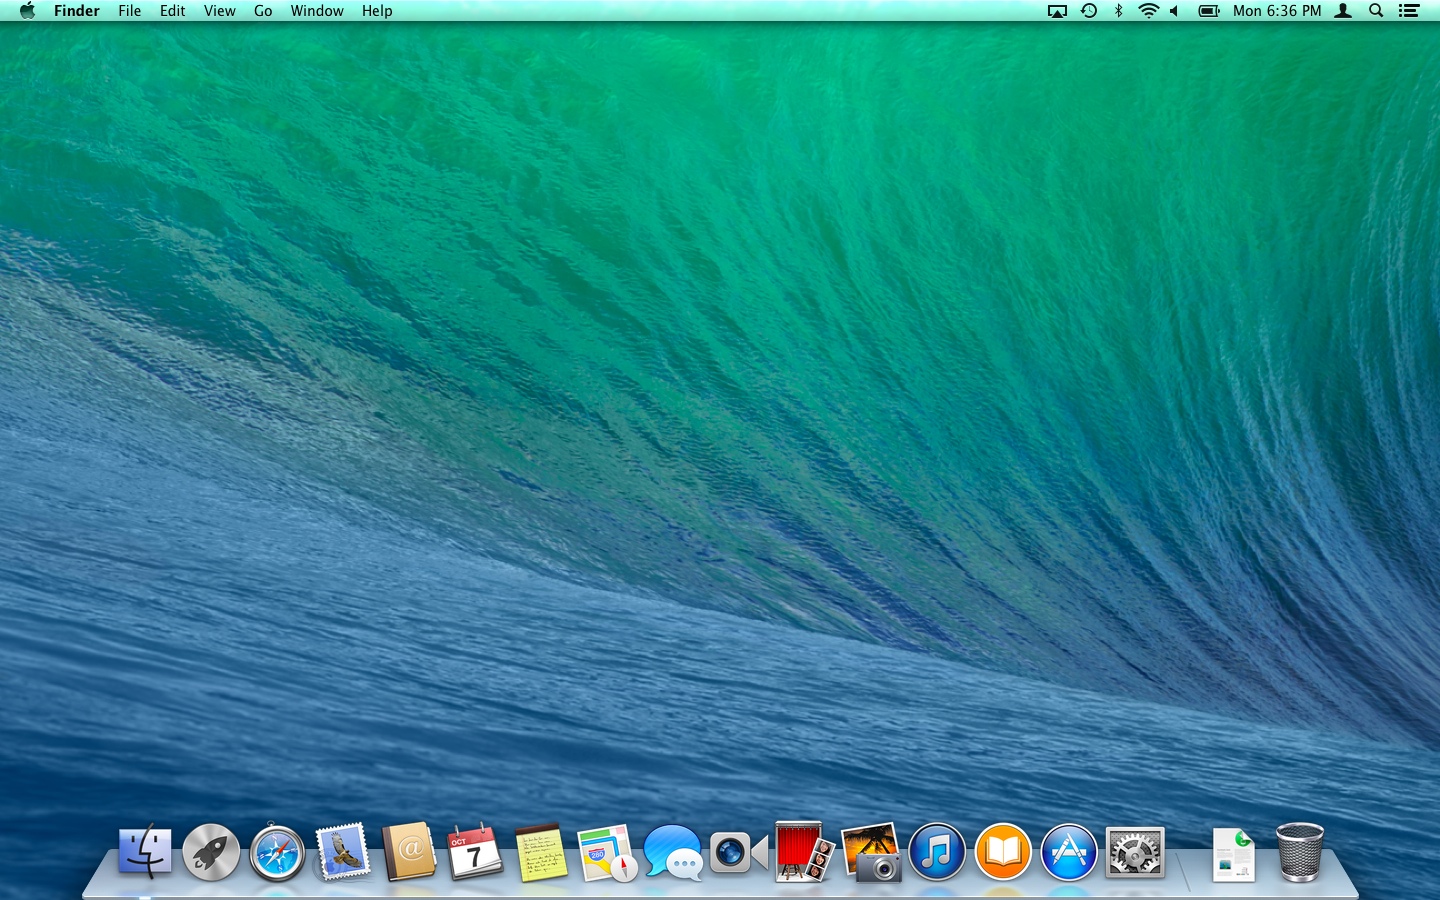 Mac Os 10.9 Upgrade Download